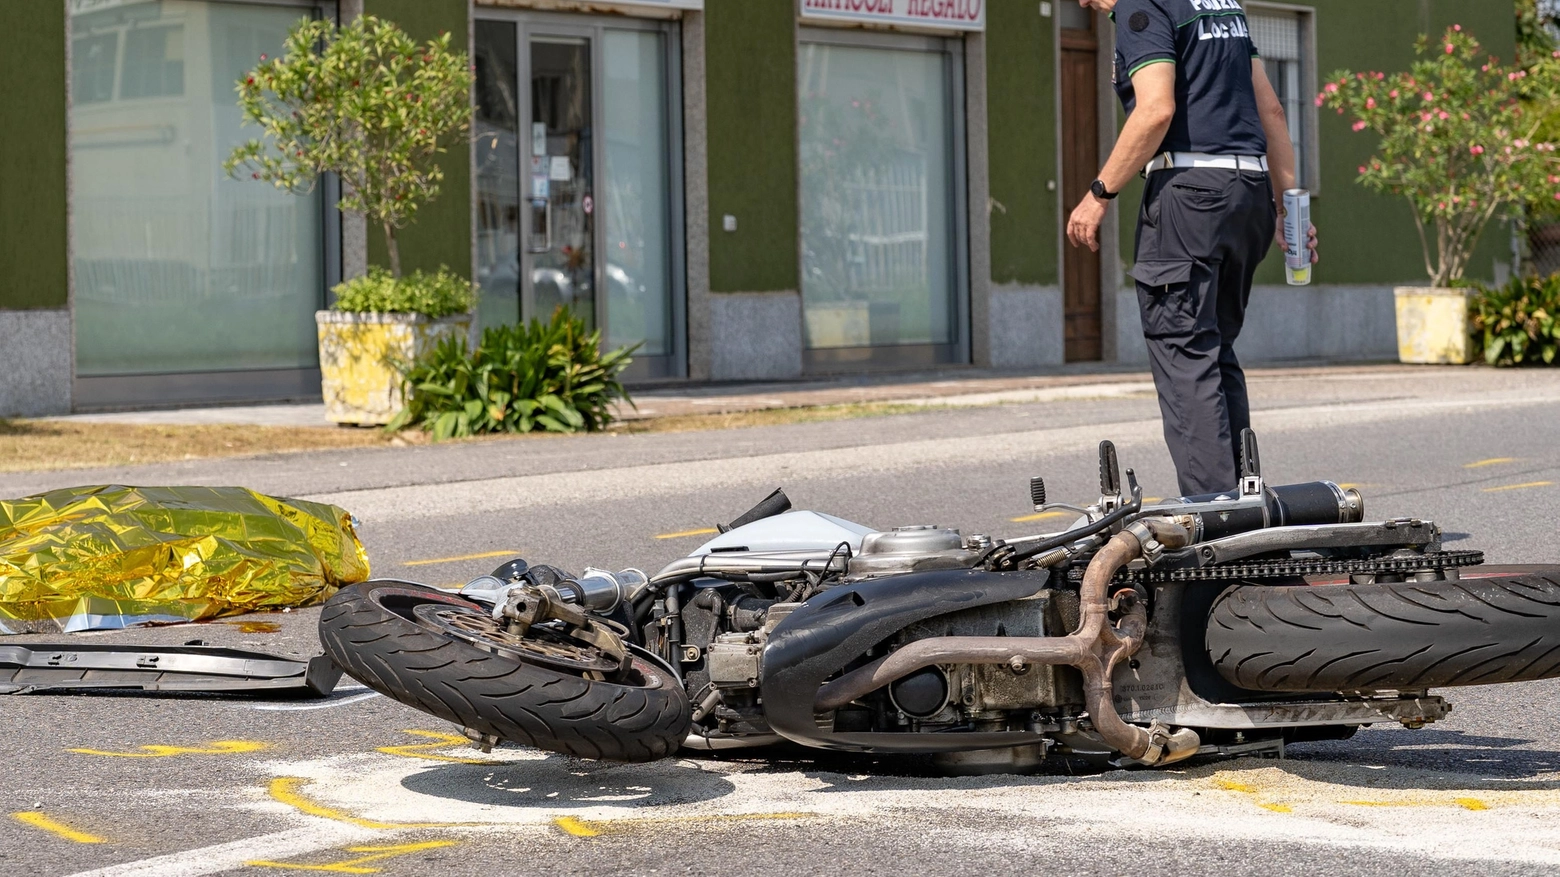 Schianto sul Sempione  Scontro tra moto e auto  Perde la vita a 42 anni